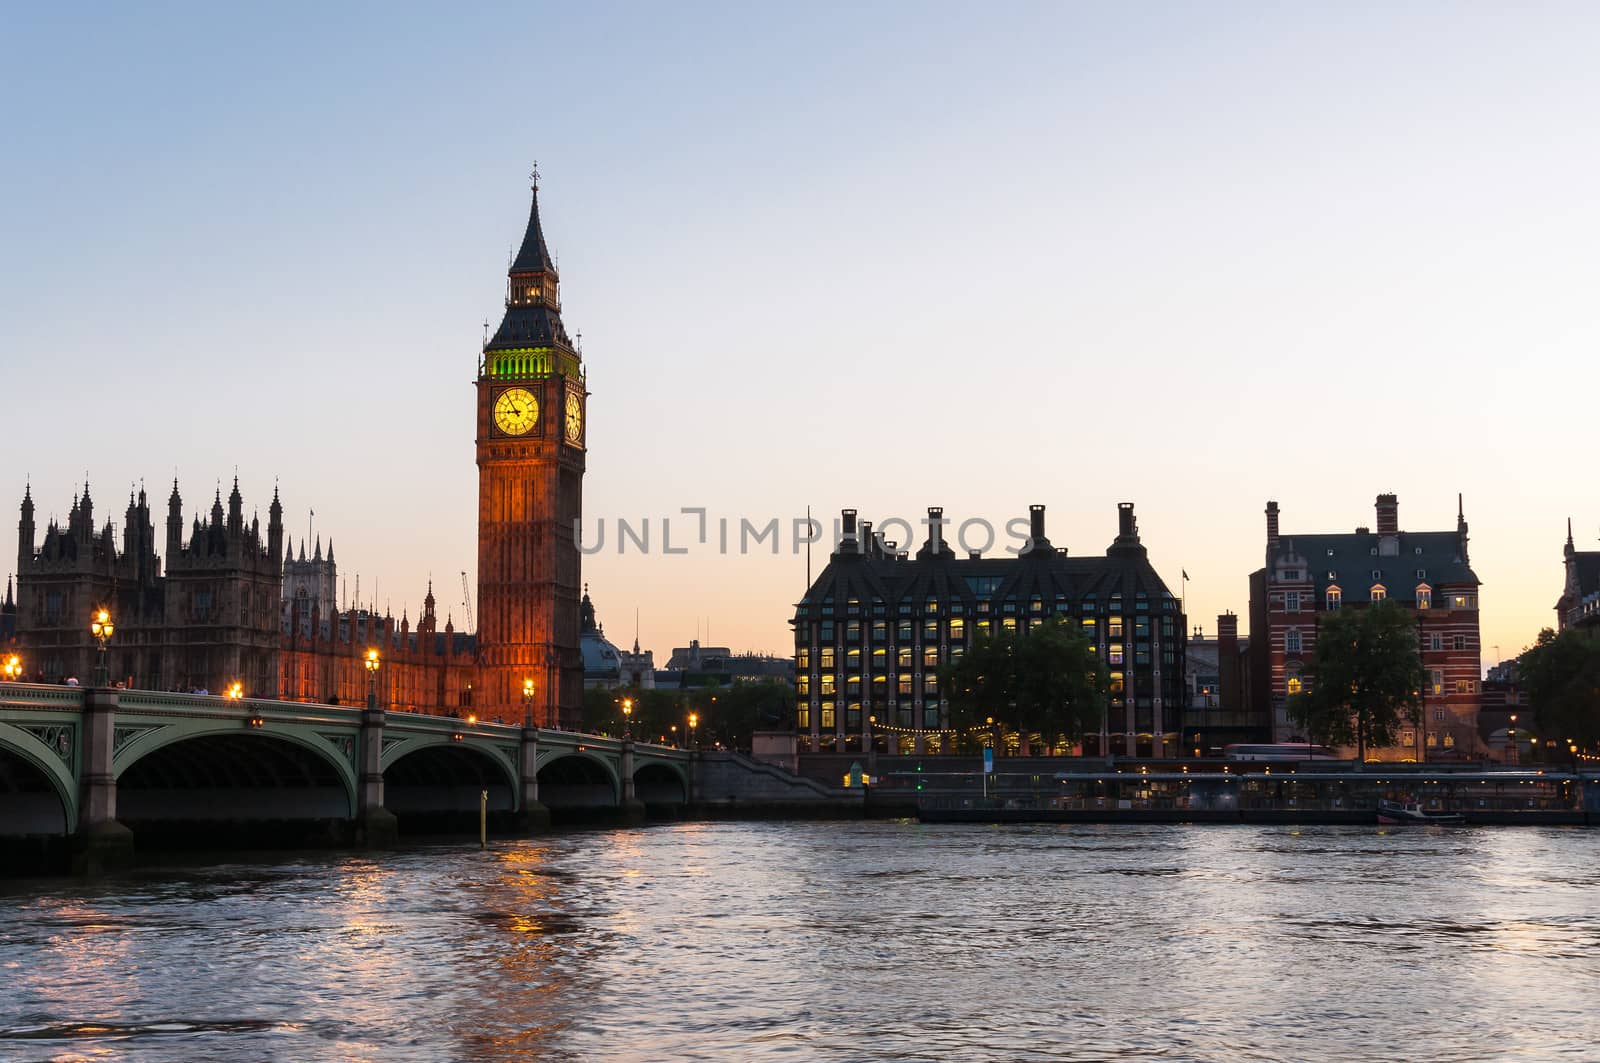 London at dusk by mkos83